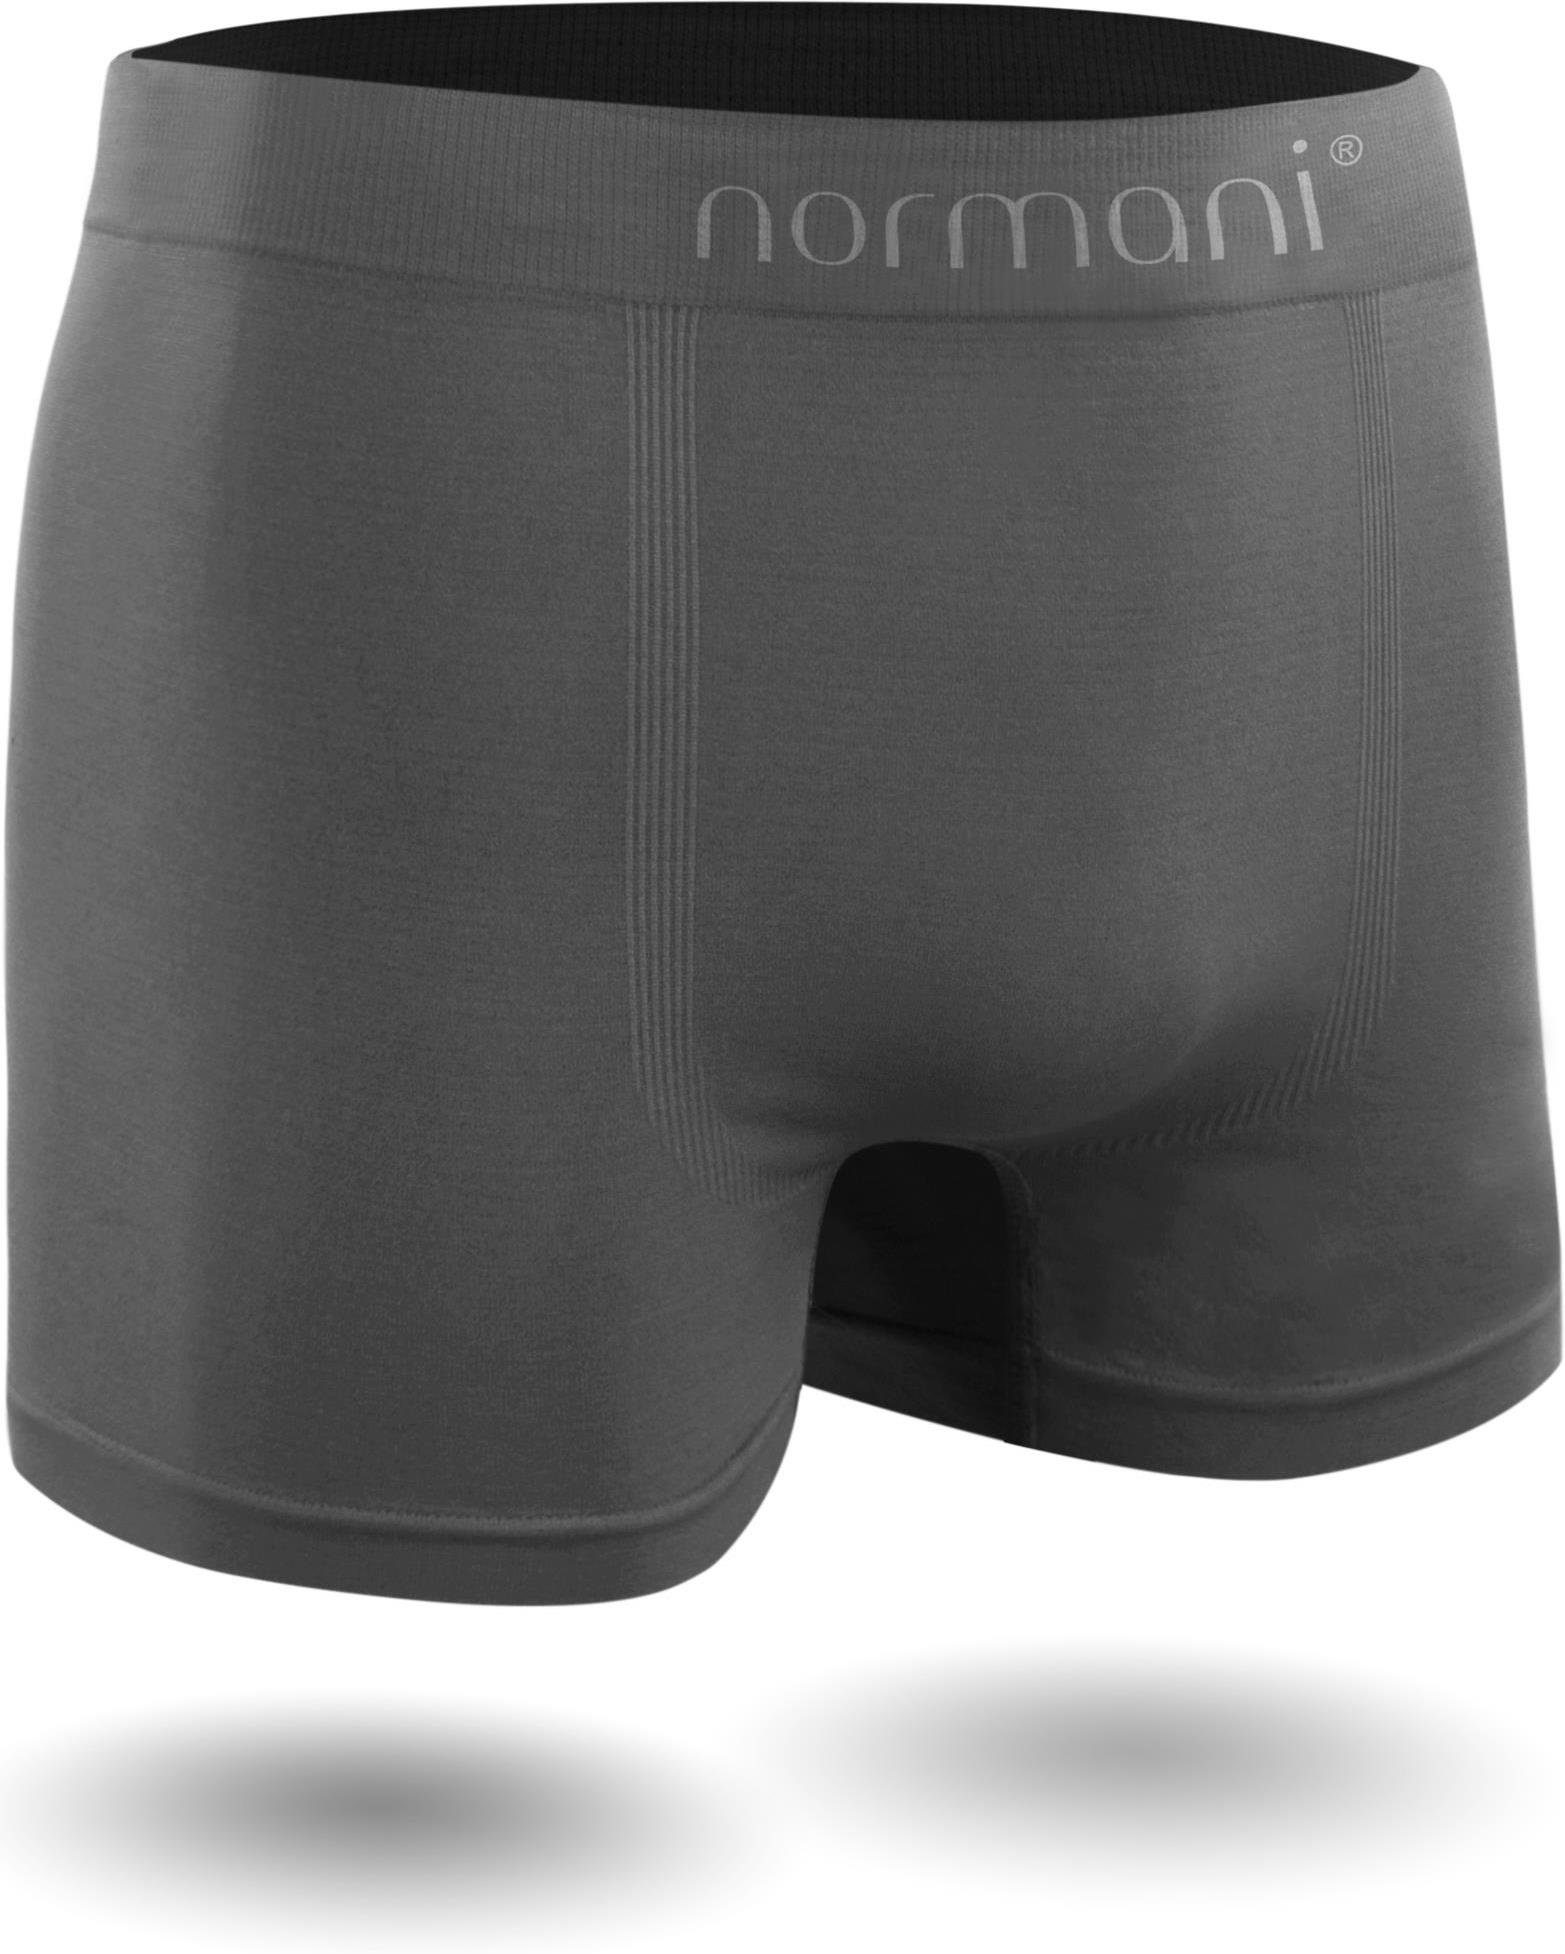 trocknendem Unterhosen für 12 Boxer Herren aus Material schnell Stück normani Retro Männer Mikrofaser-Boxershorts Grau Retropants